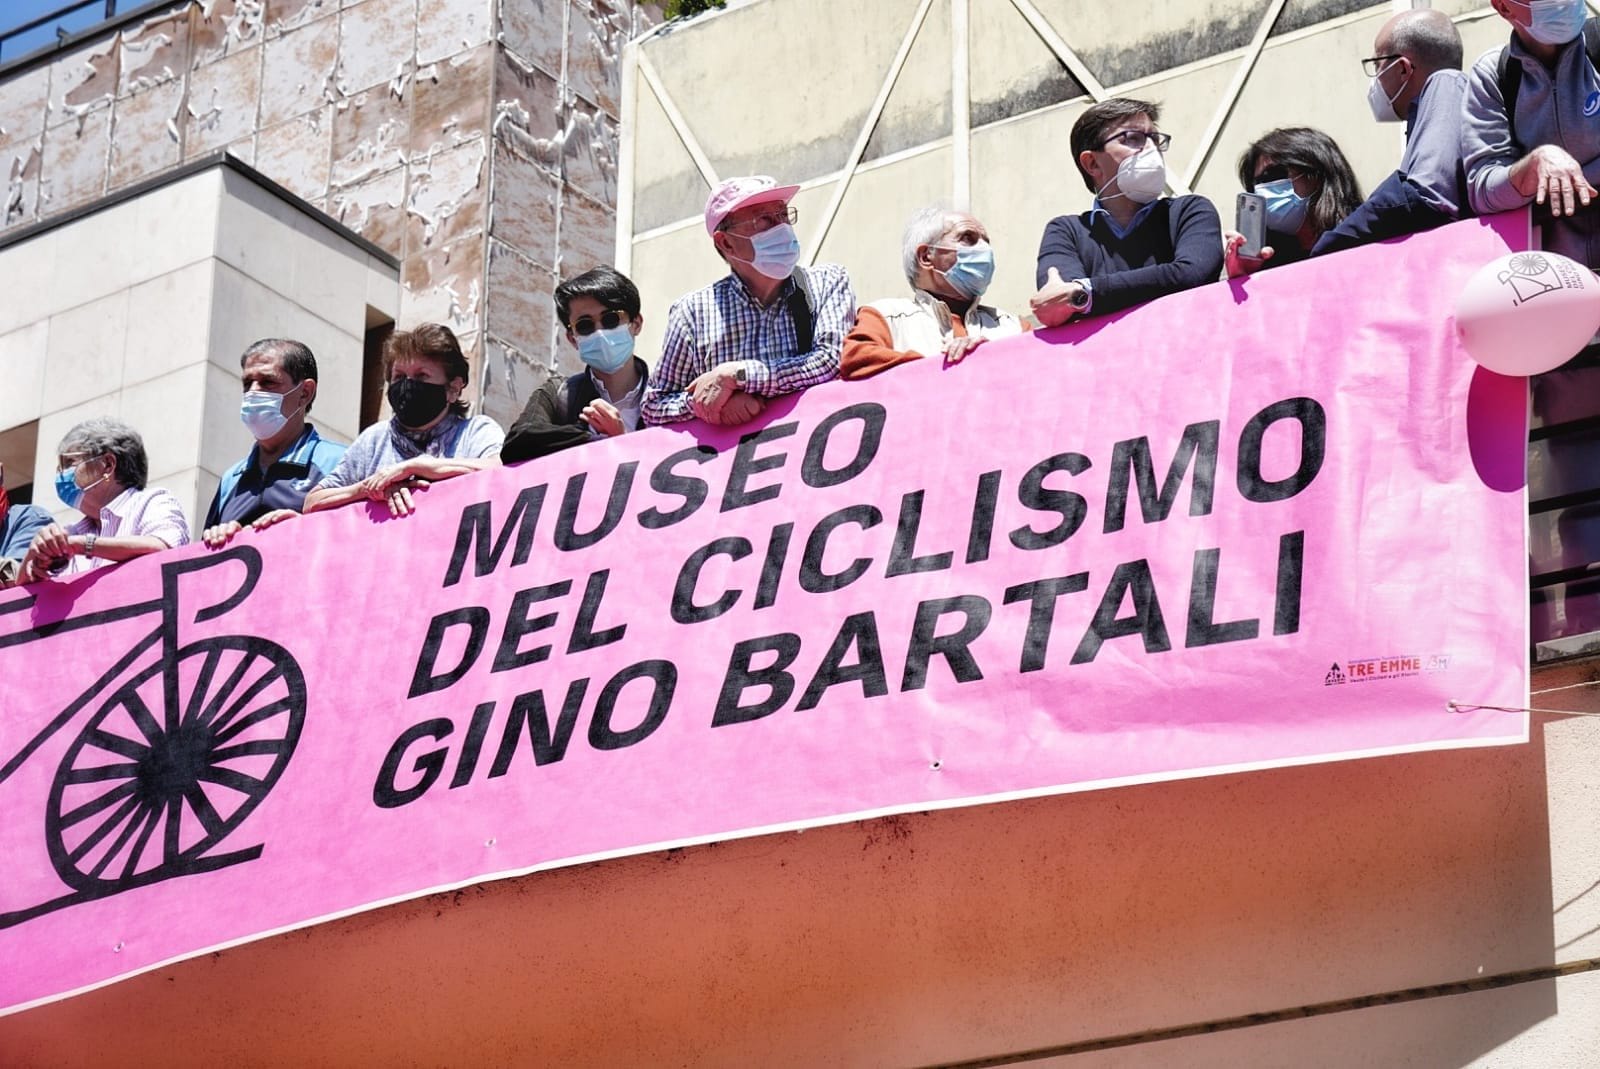 Giro d’Italia a Firenze: passaggio davanti al museo Gino Bartali